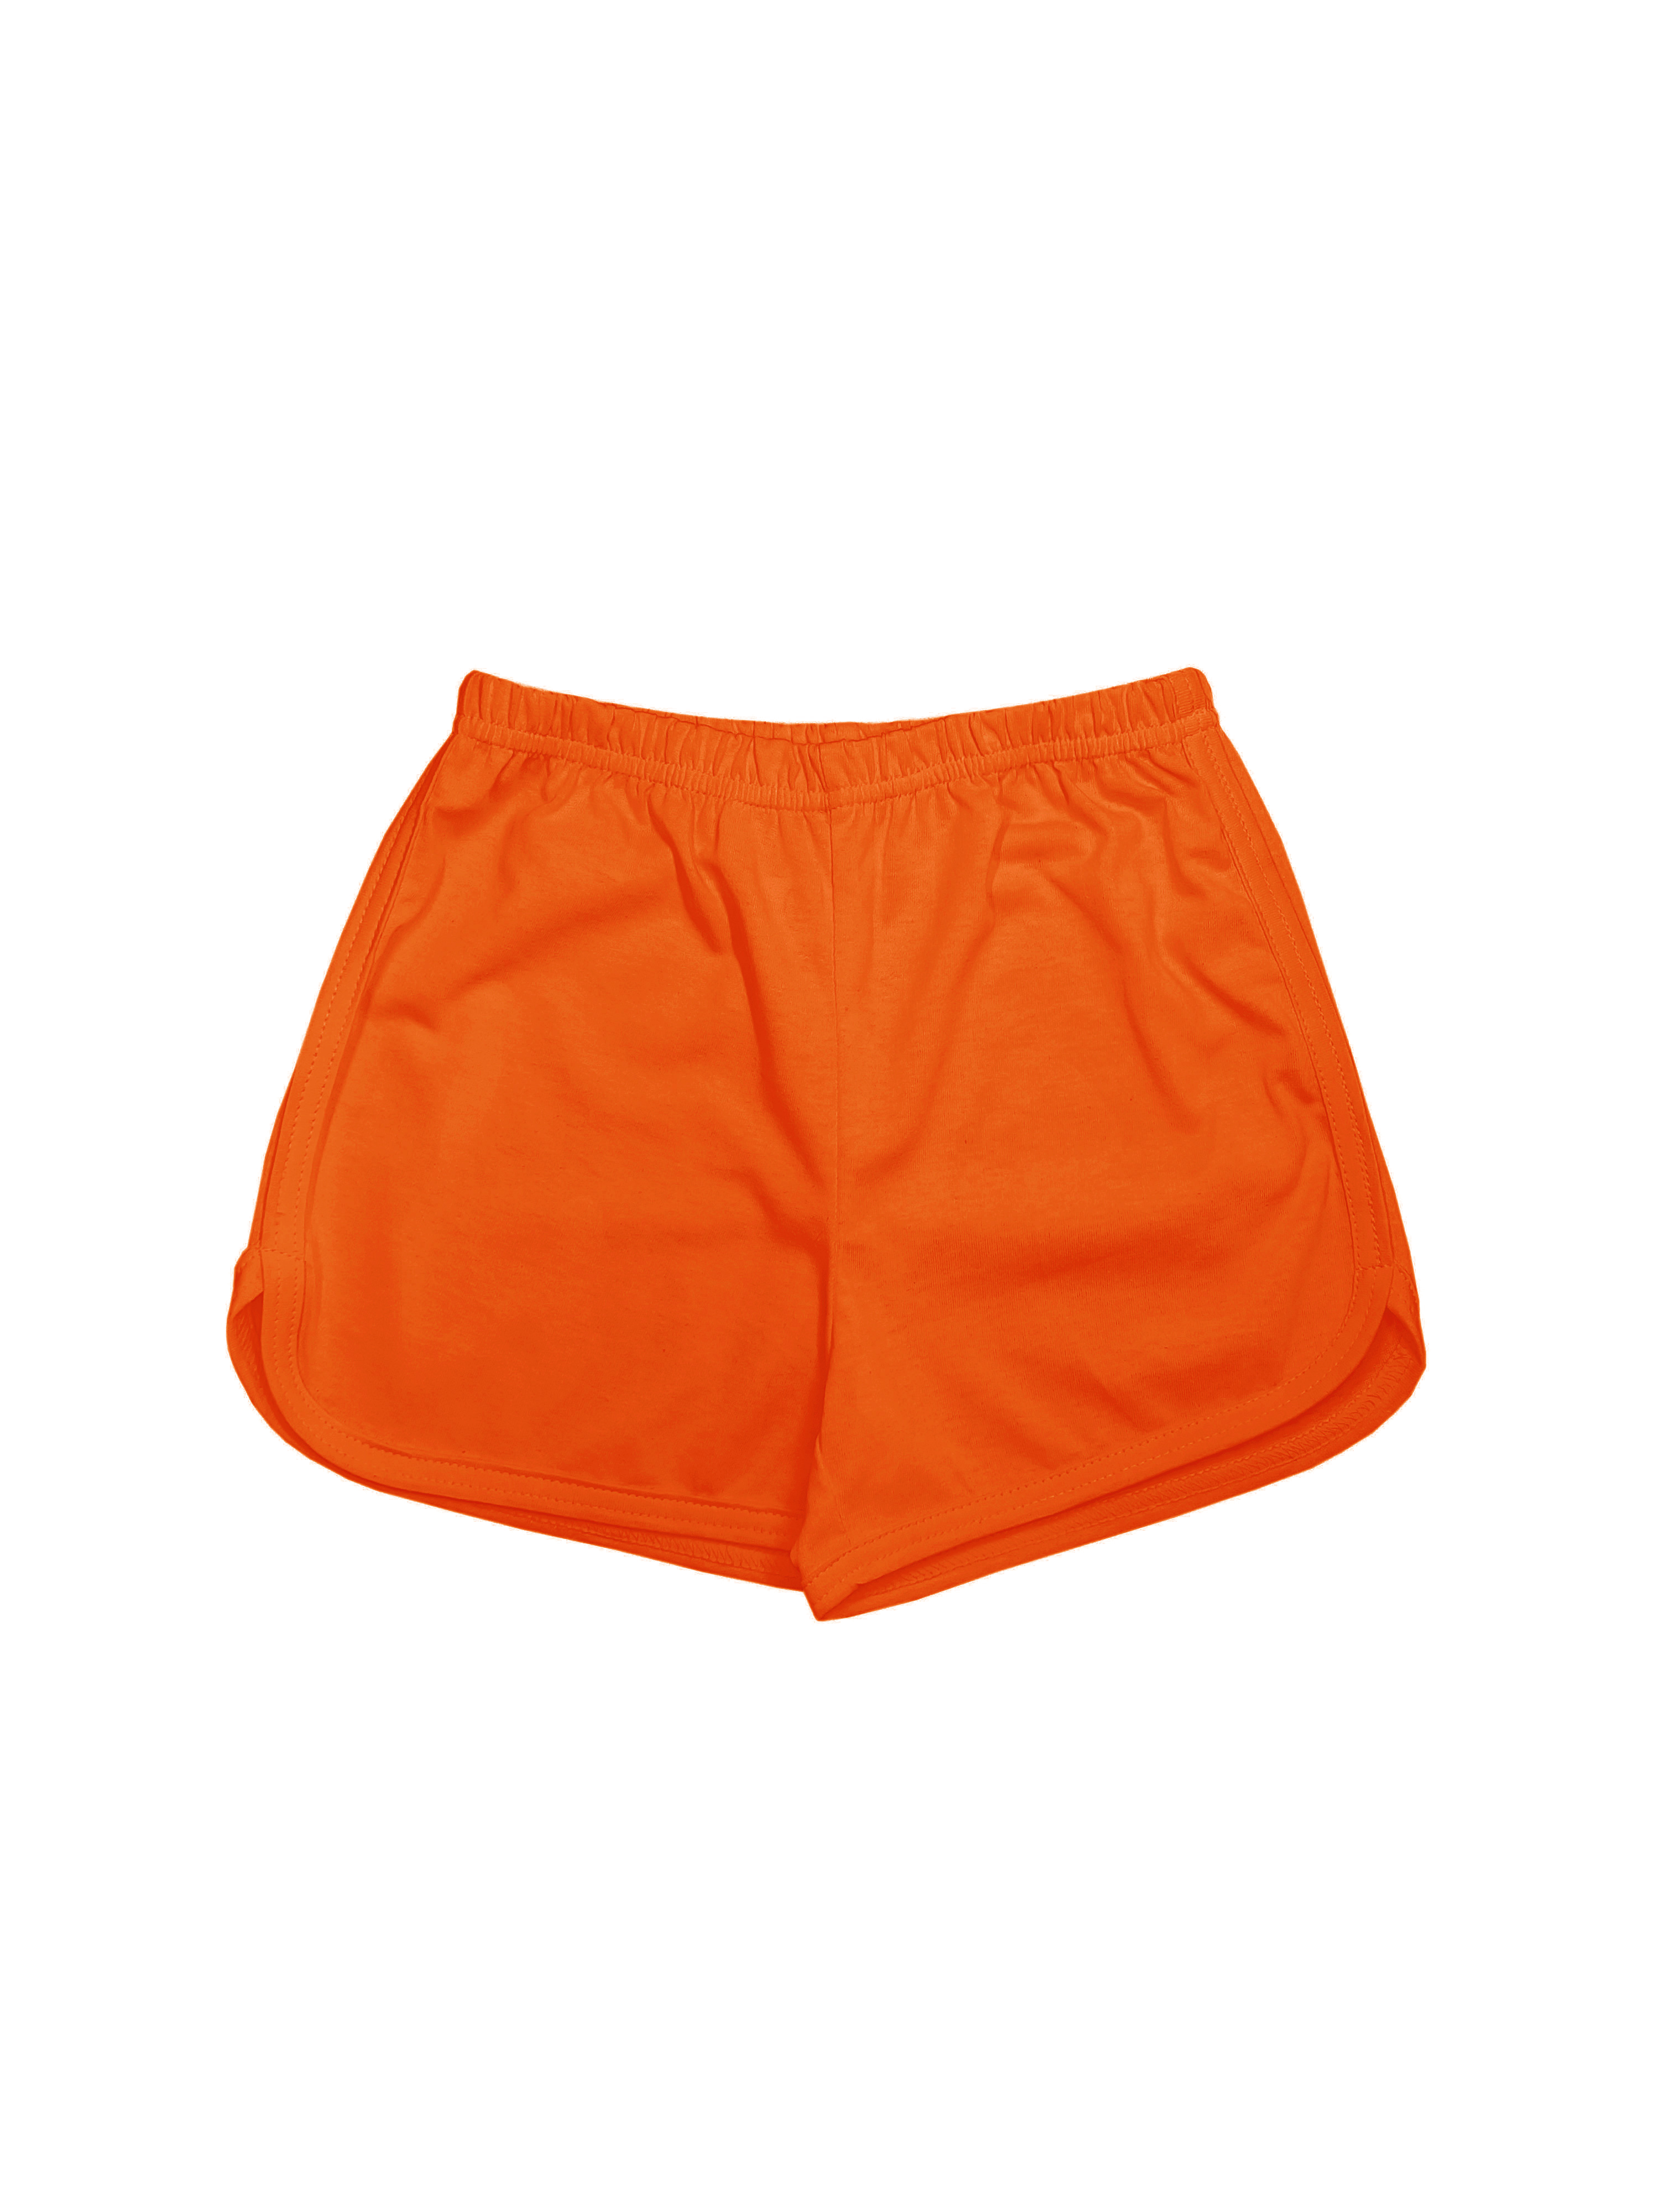 Шорты детские Детрик ШД-0322, оранжевый, 128 мяч для художественной гимнастики однотонный d15см torres пвх ag 15 04 оранжевый